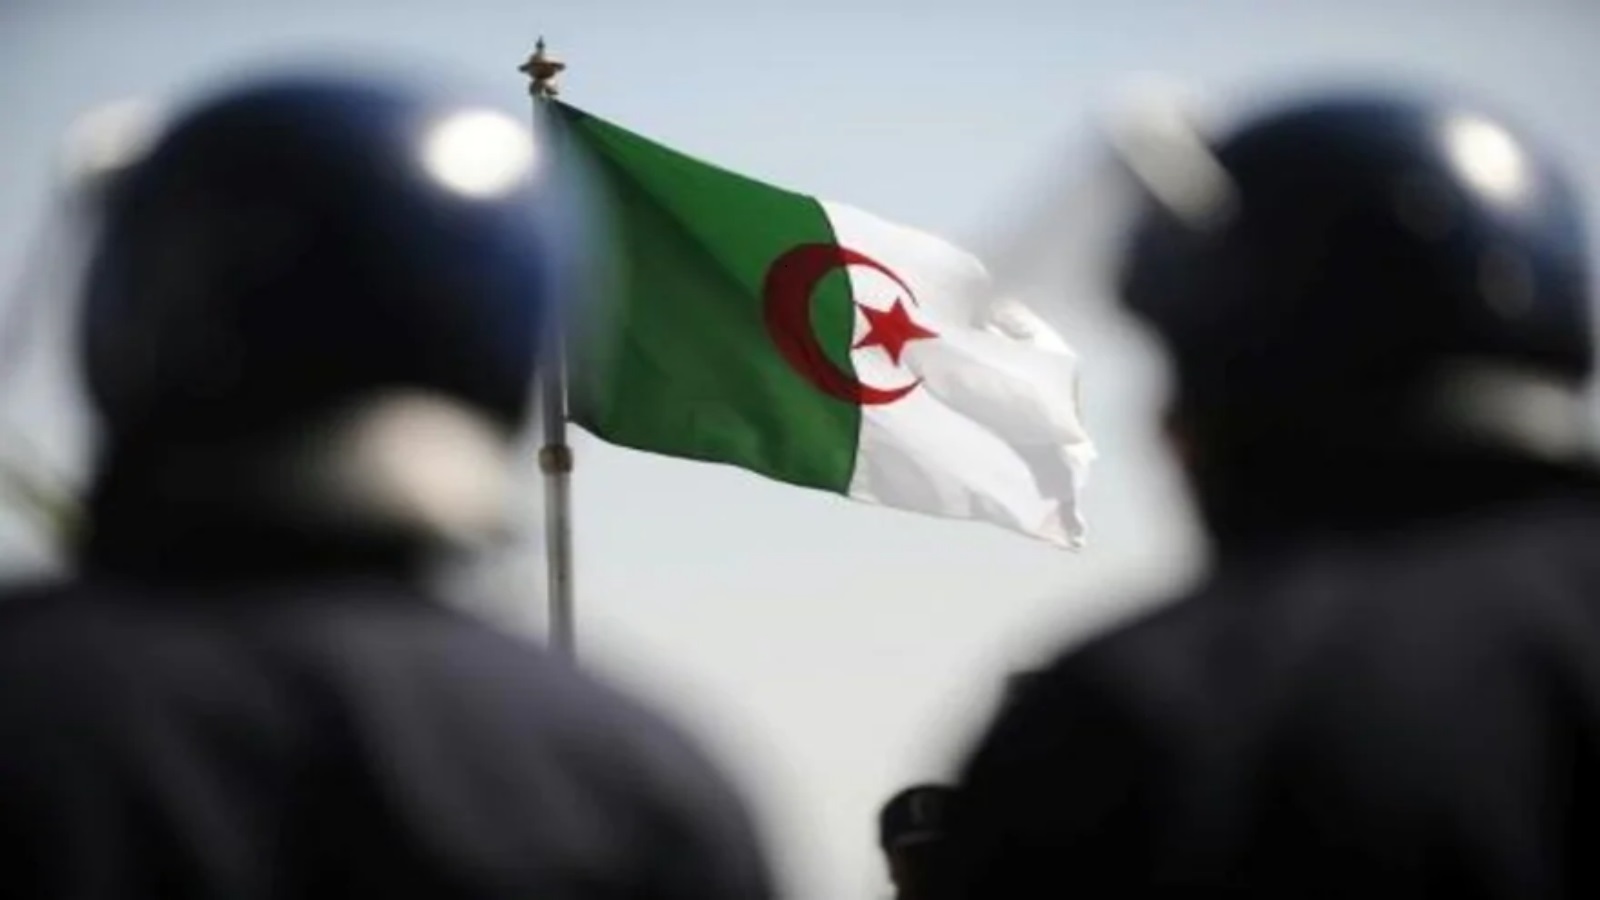 الحراك الجزائري ينظم مسيرة لإحياء الذكرى الثانية للانتفاضة